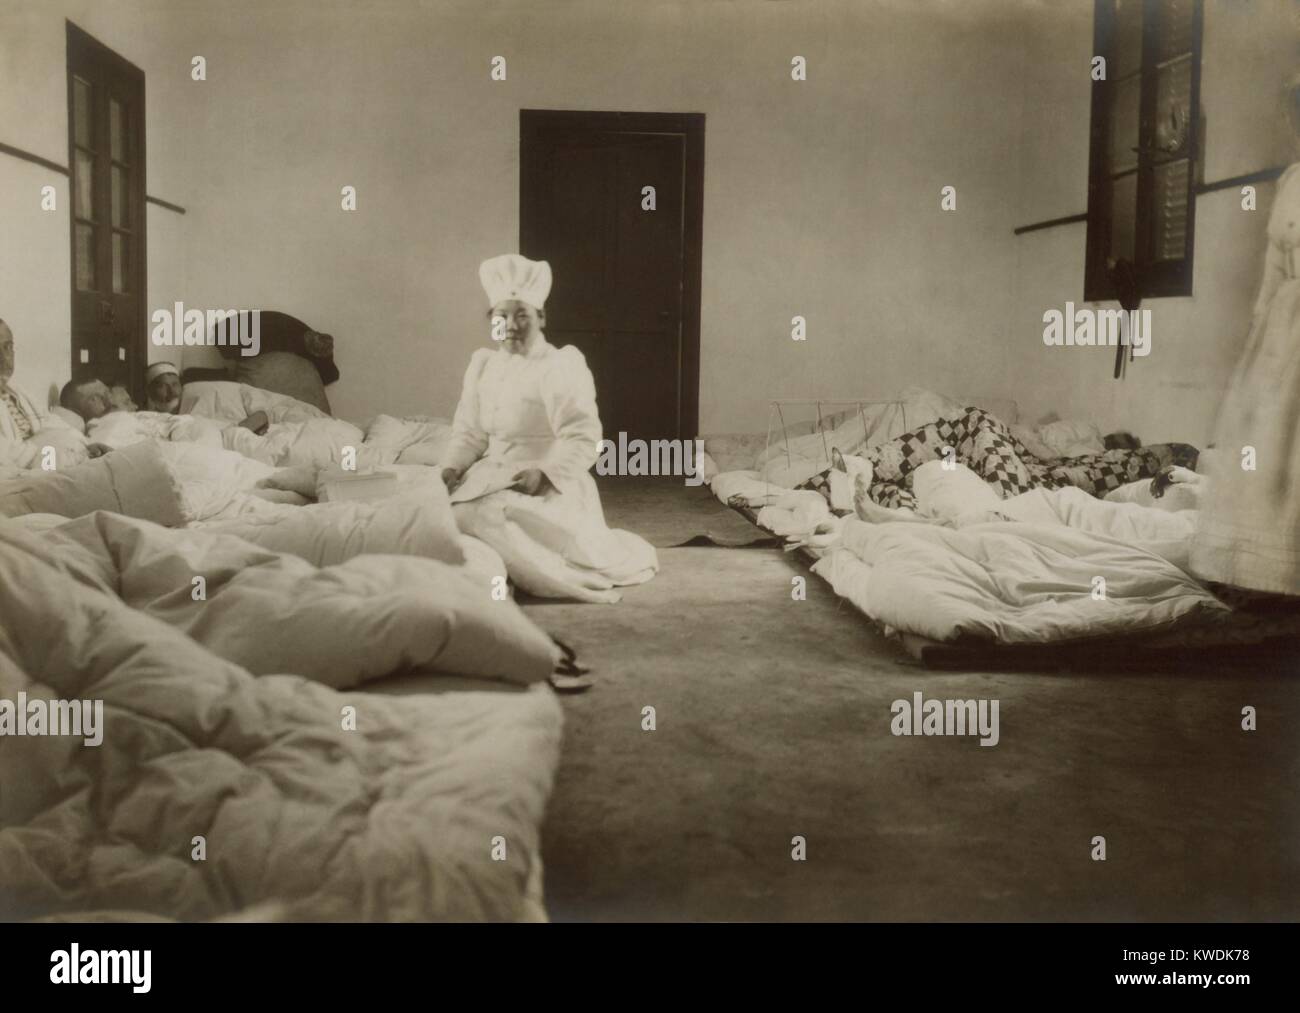 Japanische Rote Kreuz Krankenschwestern an Chemulpo Teilnahme an russische Soldaten in der Schlacht von Feb 9, 1904 verwundet. Während der Schlacht von Chemulpo Bay, 33 Russische Seeleute wurden getötet und 97 verwundet (BSLOC 2017 18 97) Stockfoto